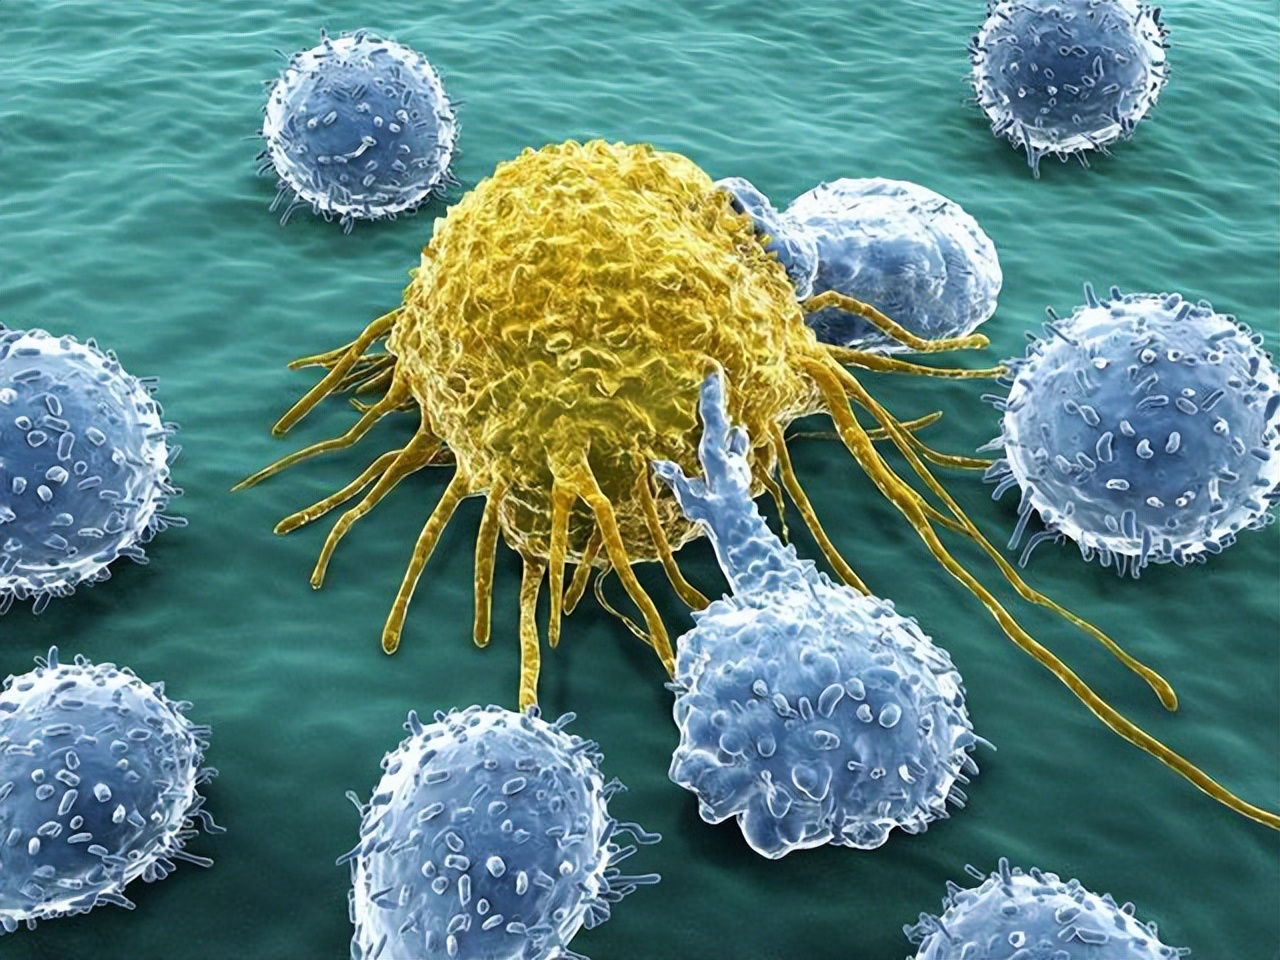 將癌細胞“注射”在人體，會不會患癌呢？ 建議花時間了解下